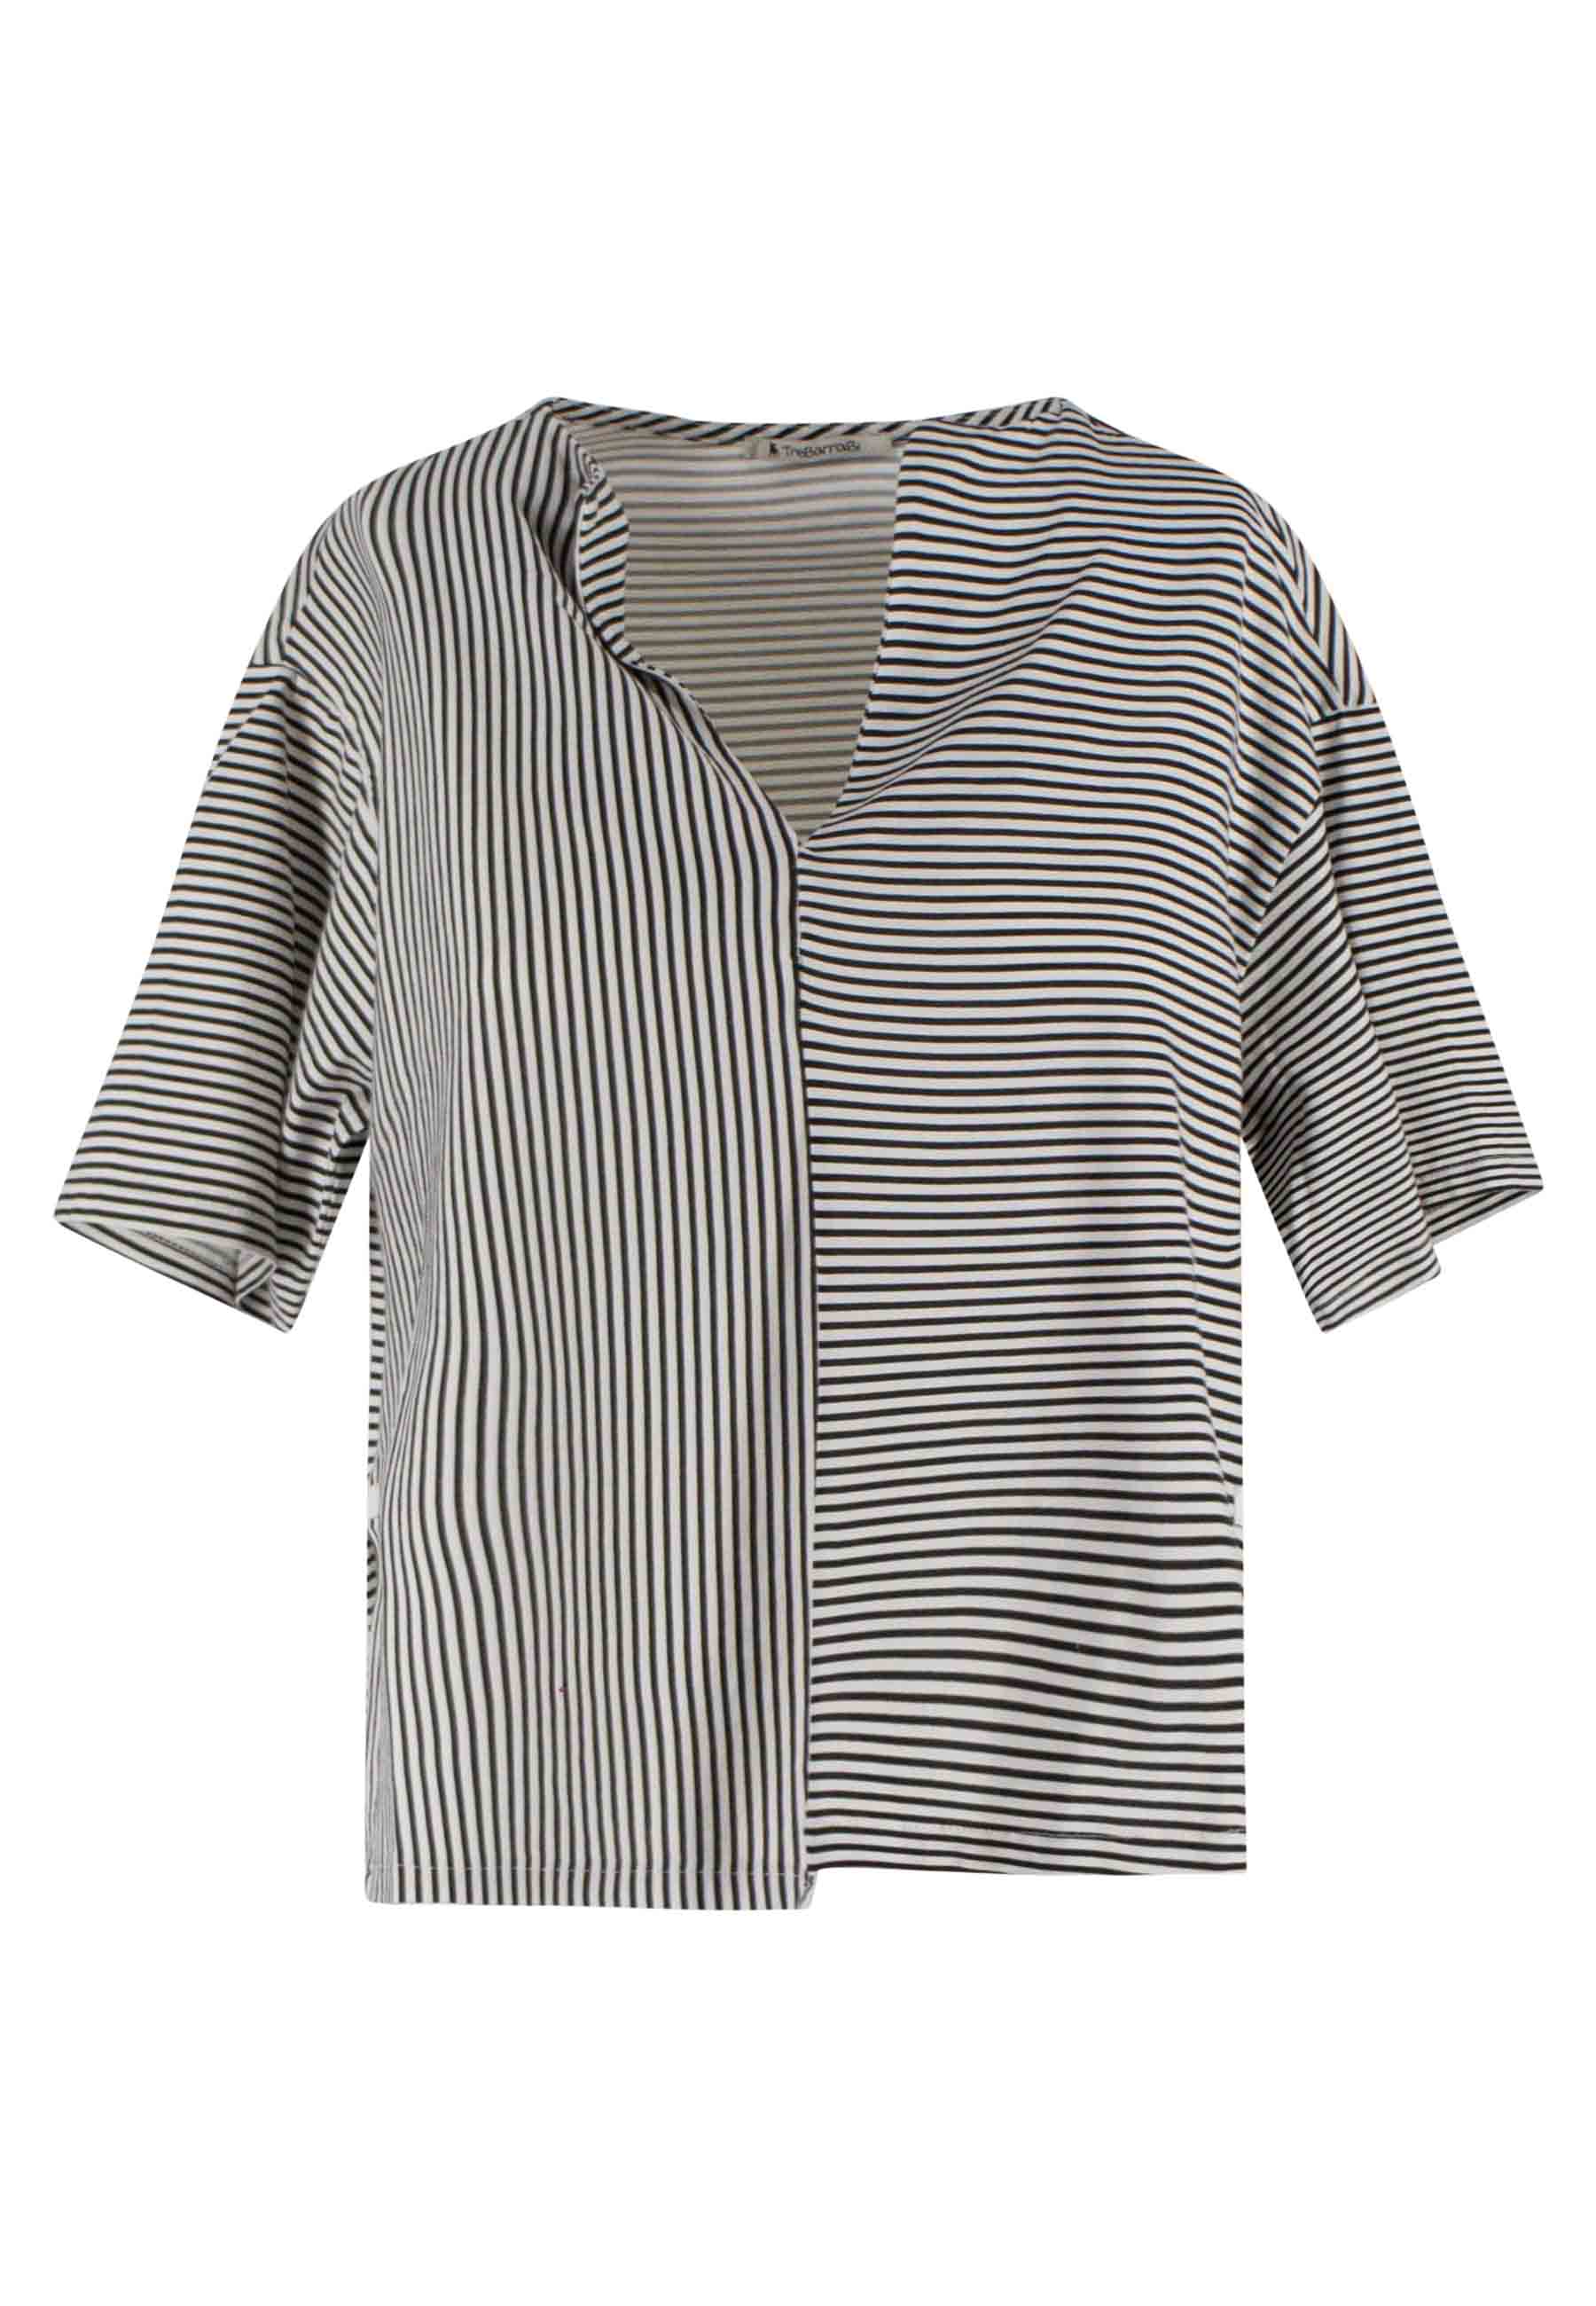 T-shirt donna Tita in cotone bianco e nero a righe e scollo a V